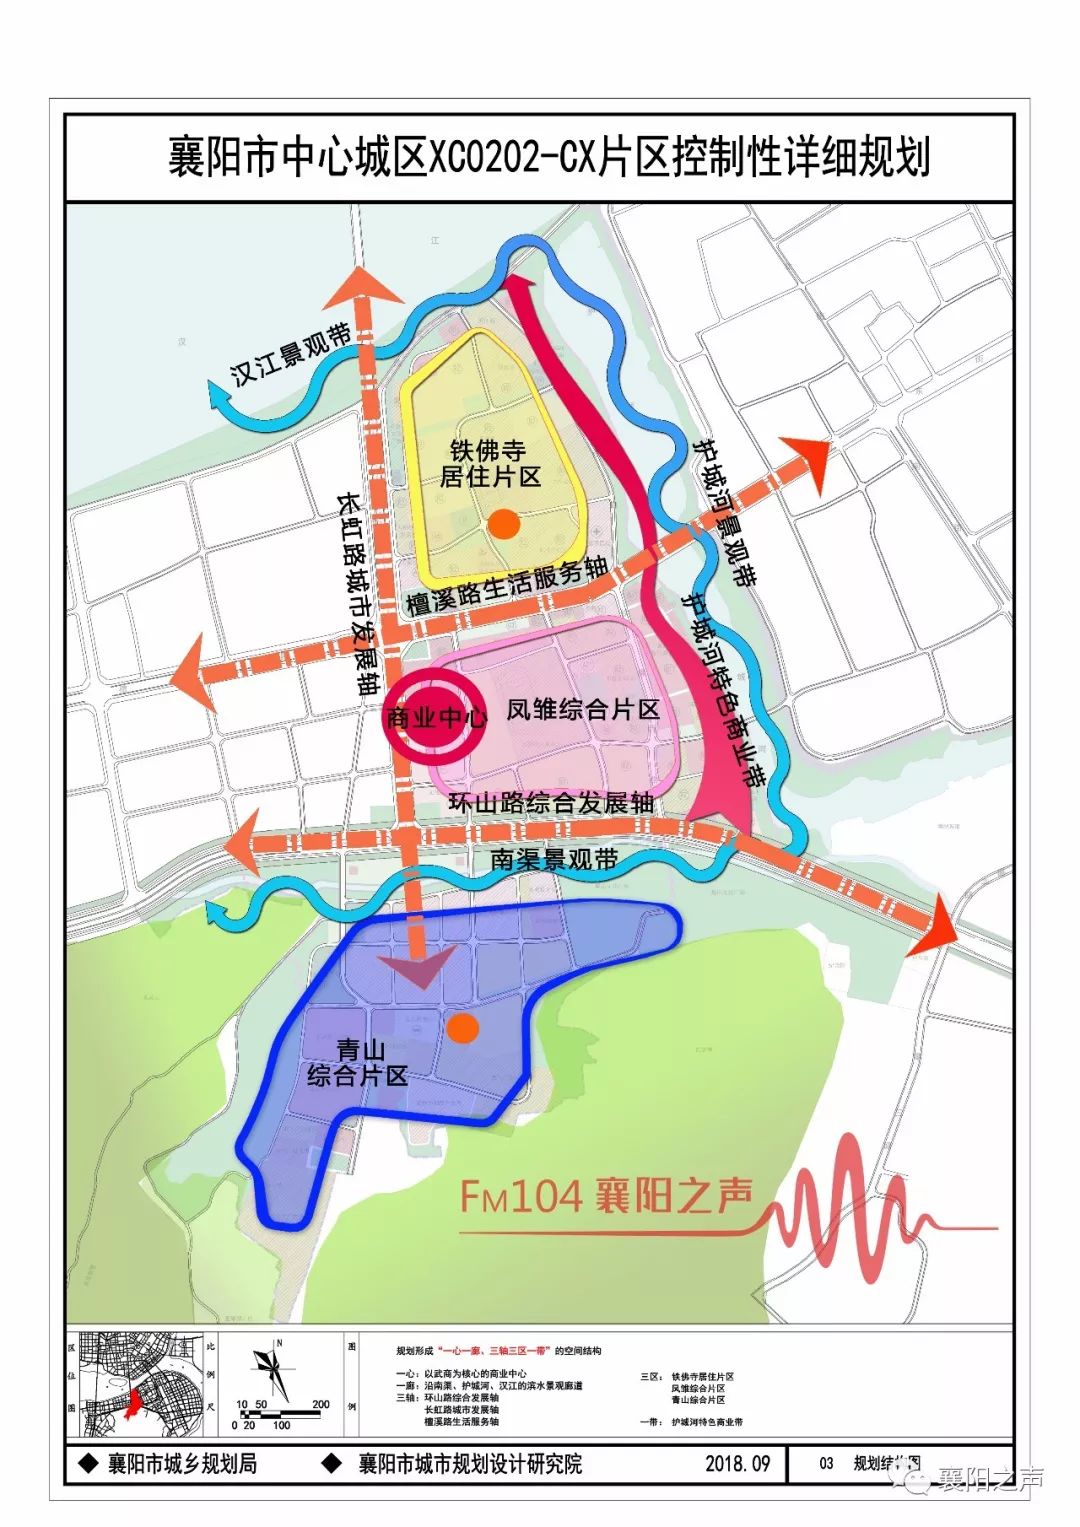 参照襄阳市社区专题研究,规划以环城南路为界划分为两个标准社区;北部